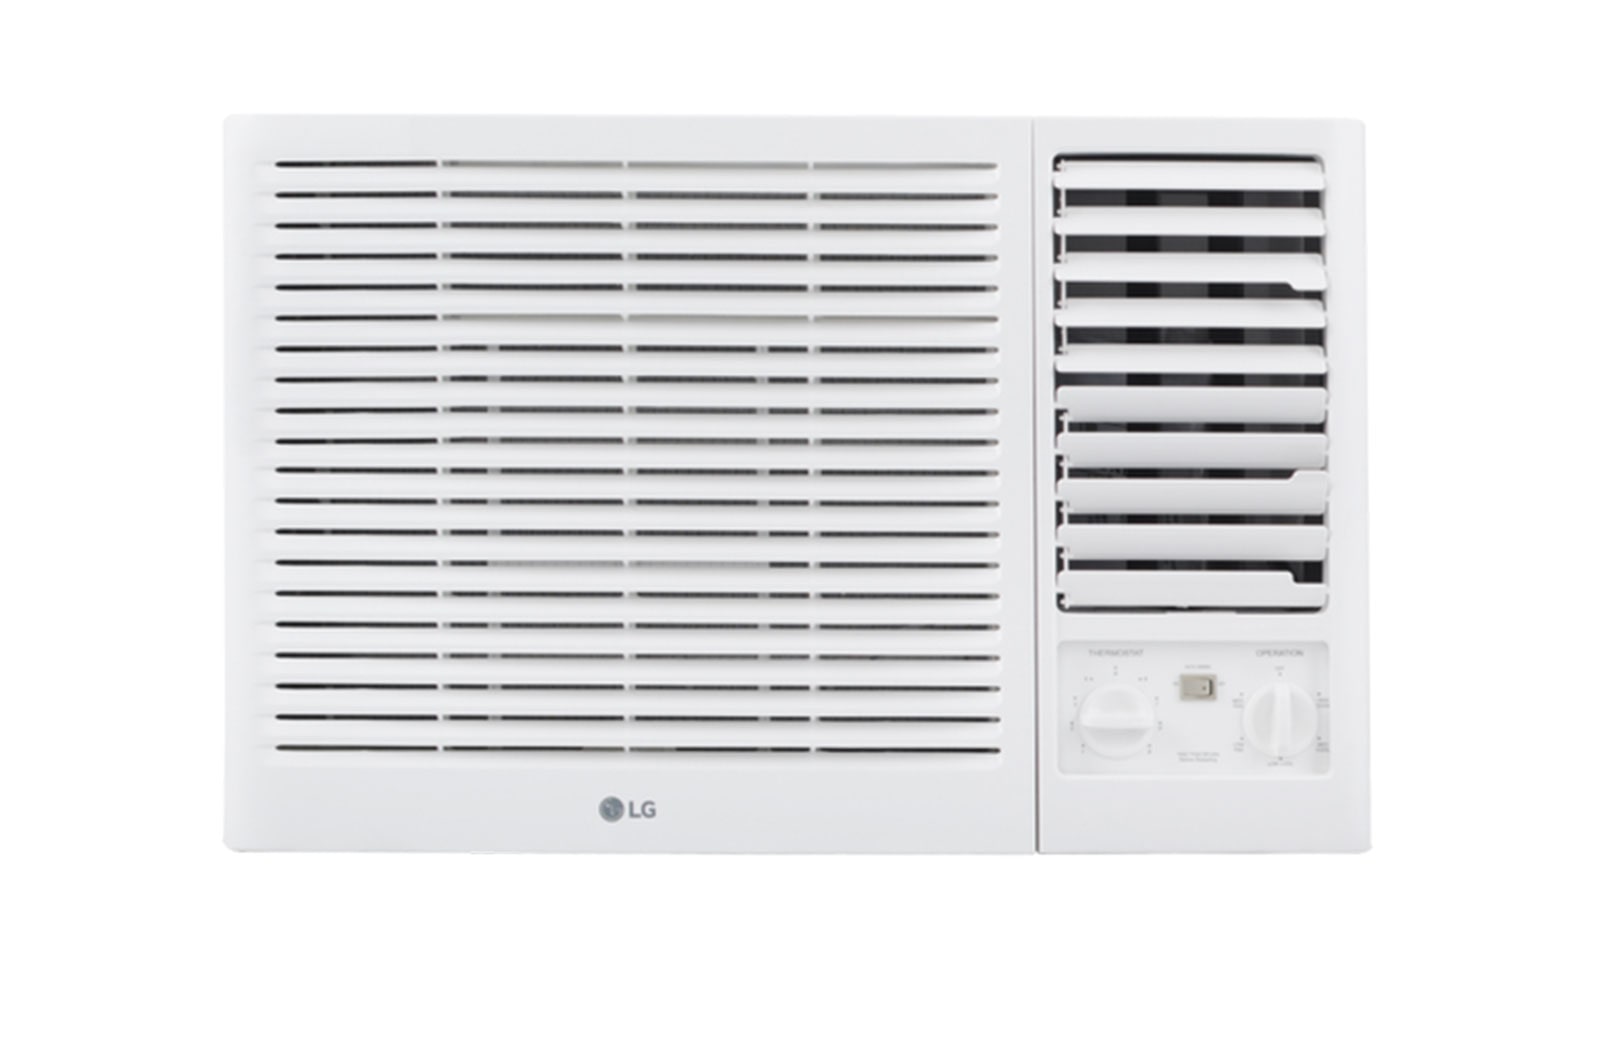 LG SEEC 18500 btu Heat & Cool | Tropical Compressor | Anti-Dust Gold Fin, C182EH